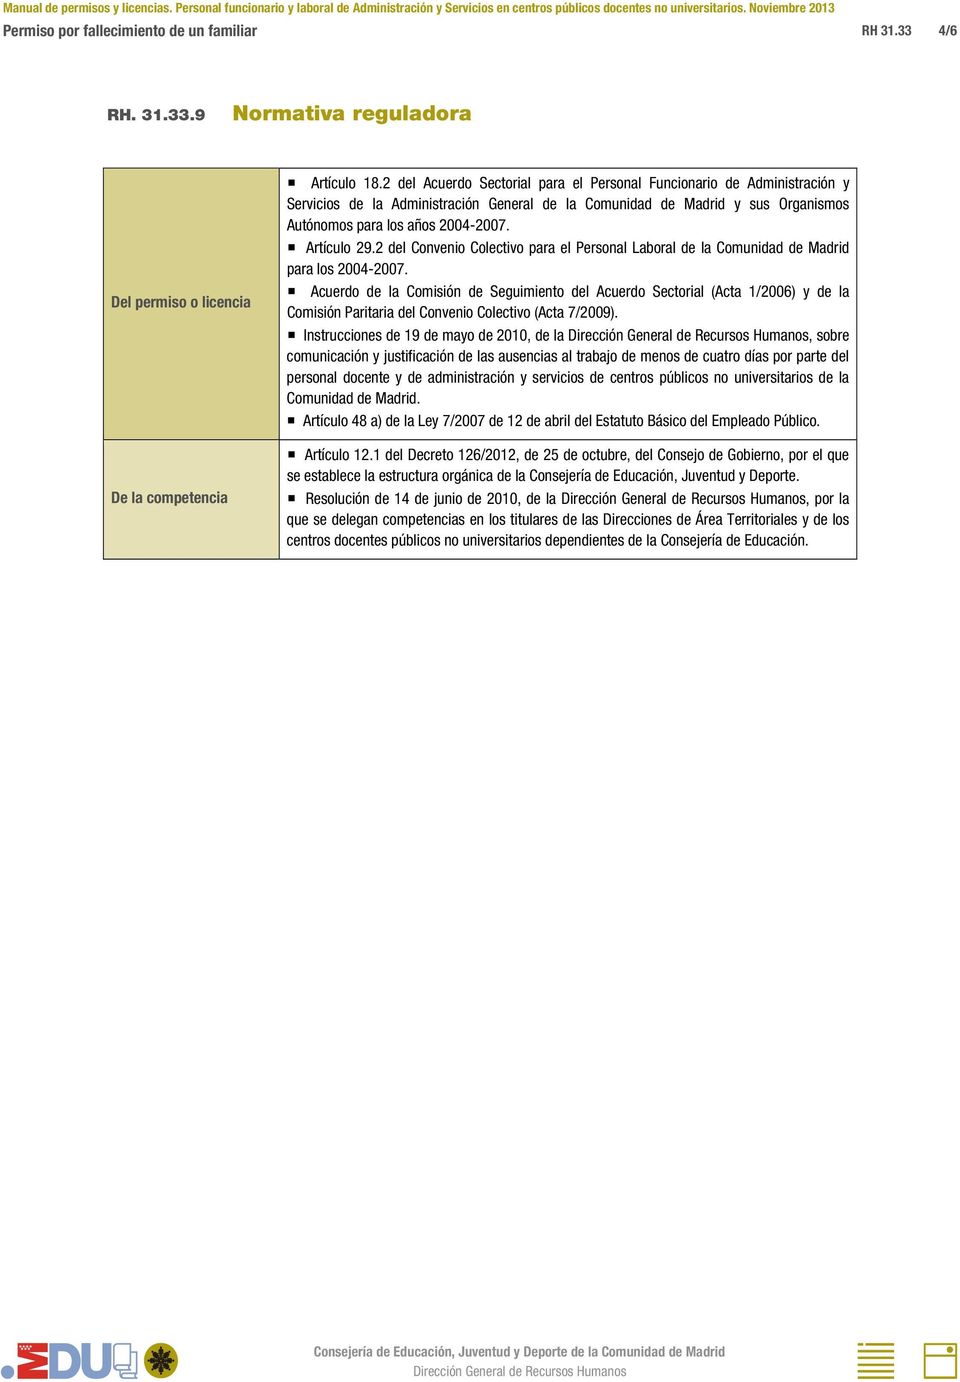 Artículo 29.2 del Convenio Colectivo para el Personal Laboral de la Comunidad de Madrid para los 2004-2007.